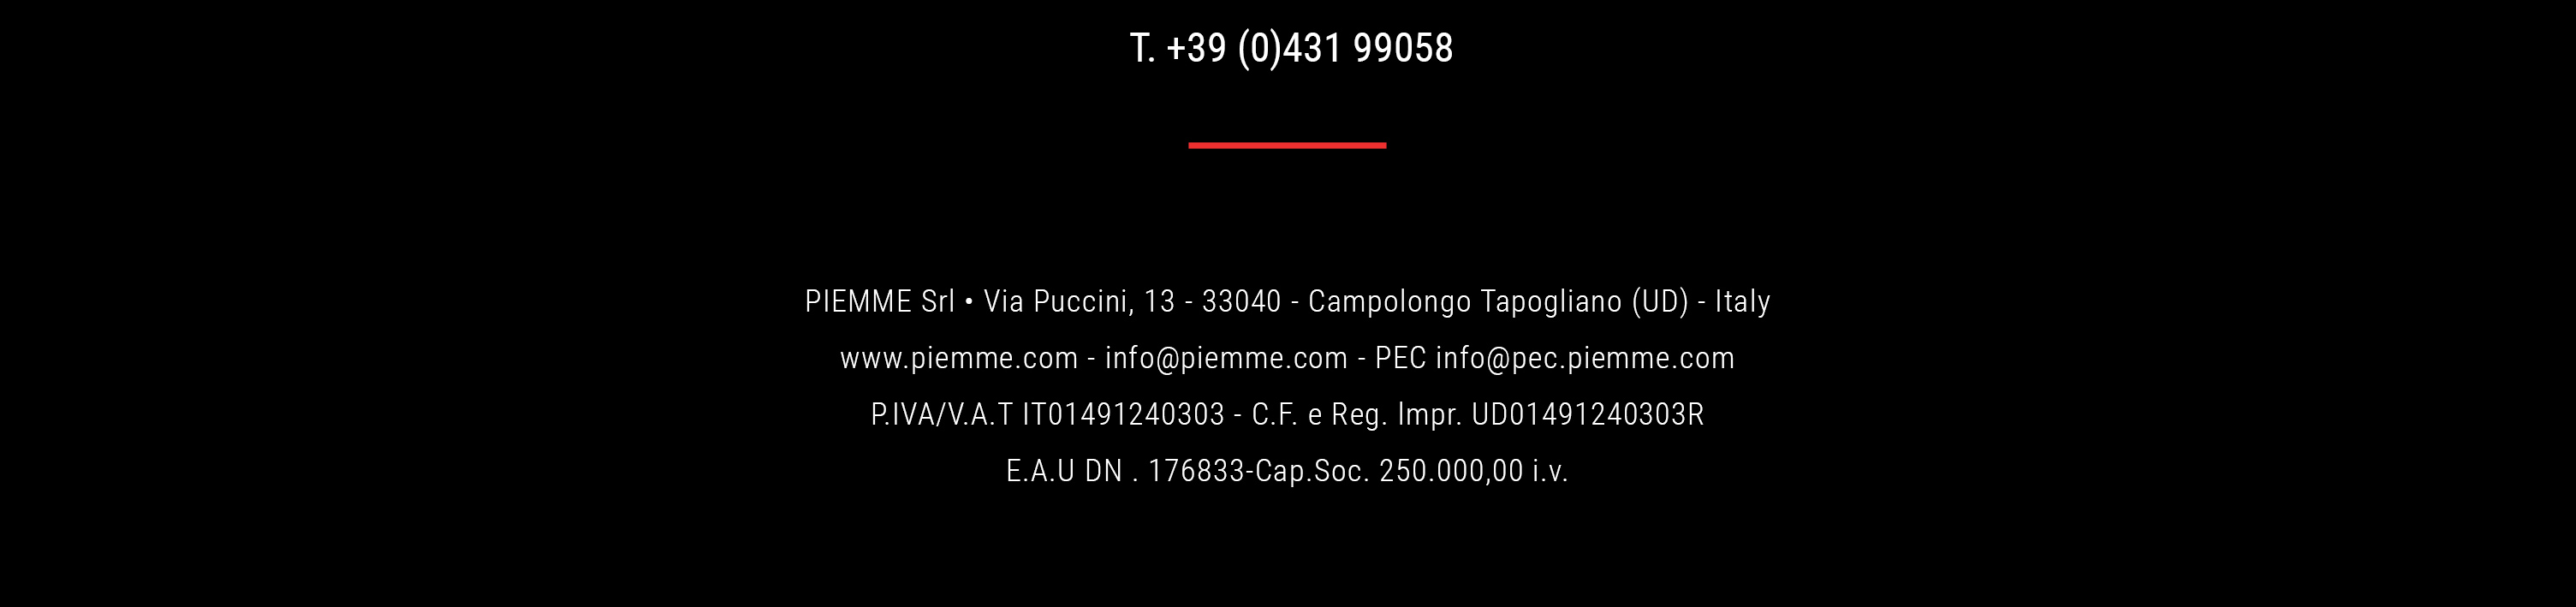 footer PIEMME S.r.l. - via Puccini 13 33040 Campologno Tapogliano UD